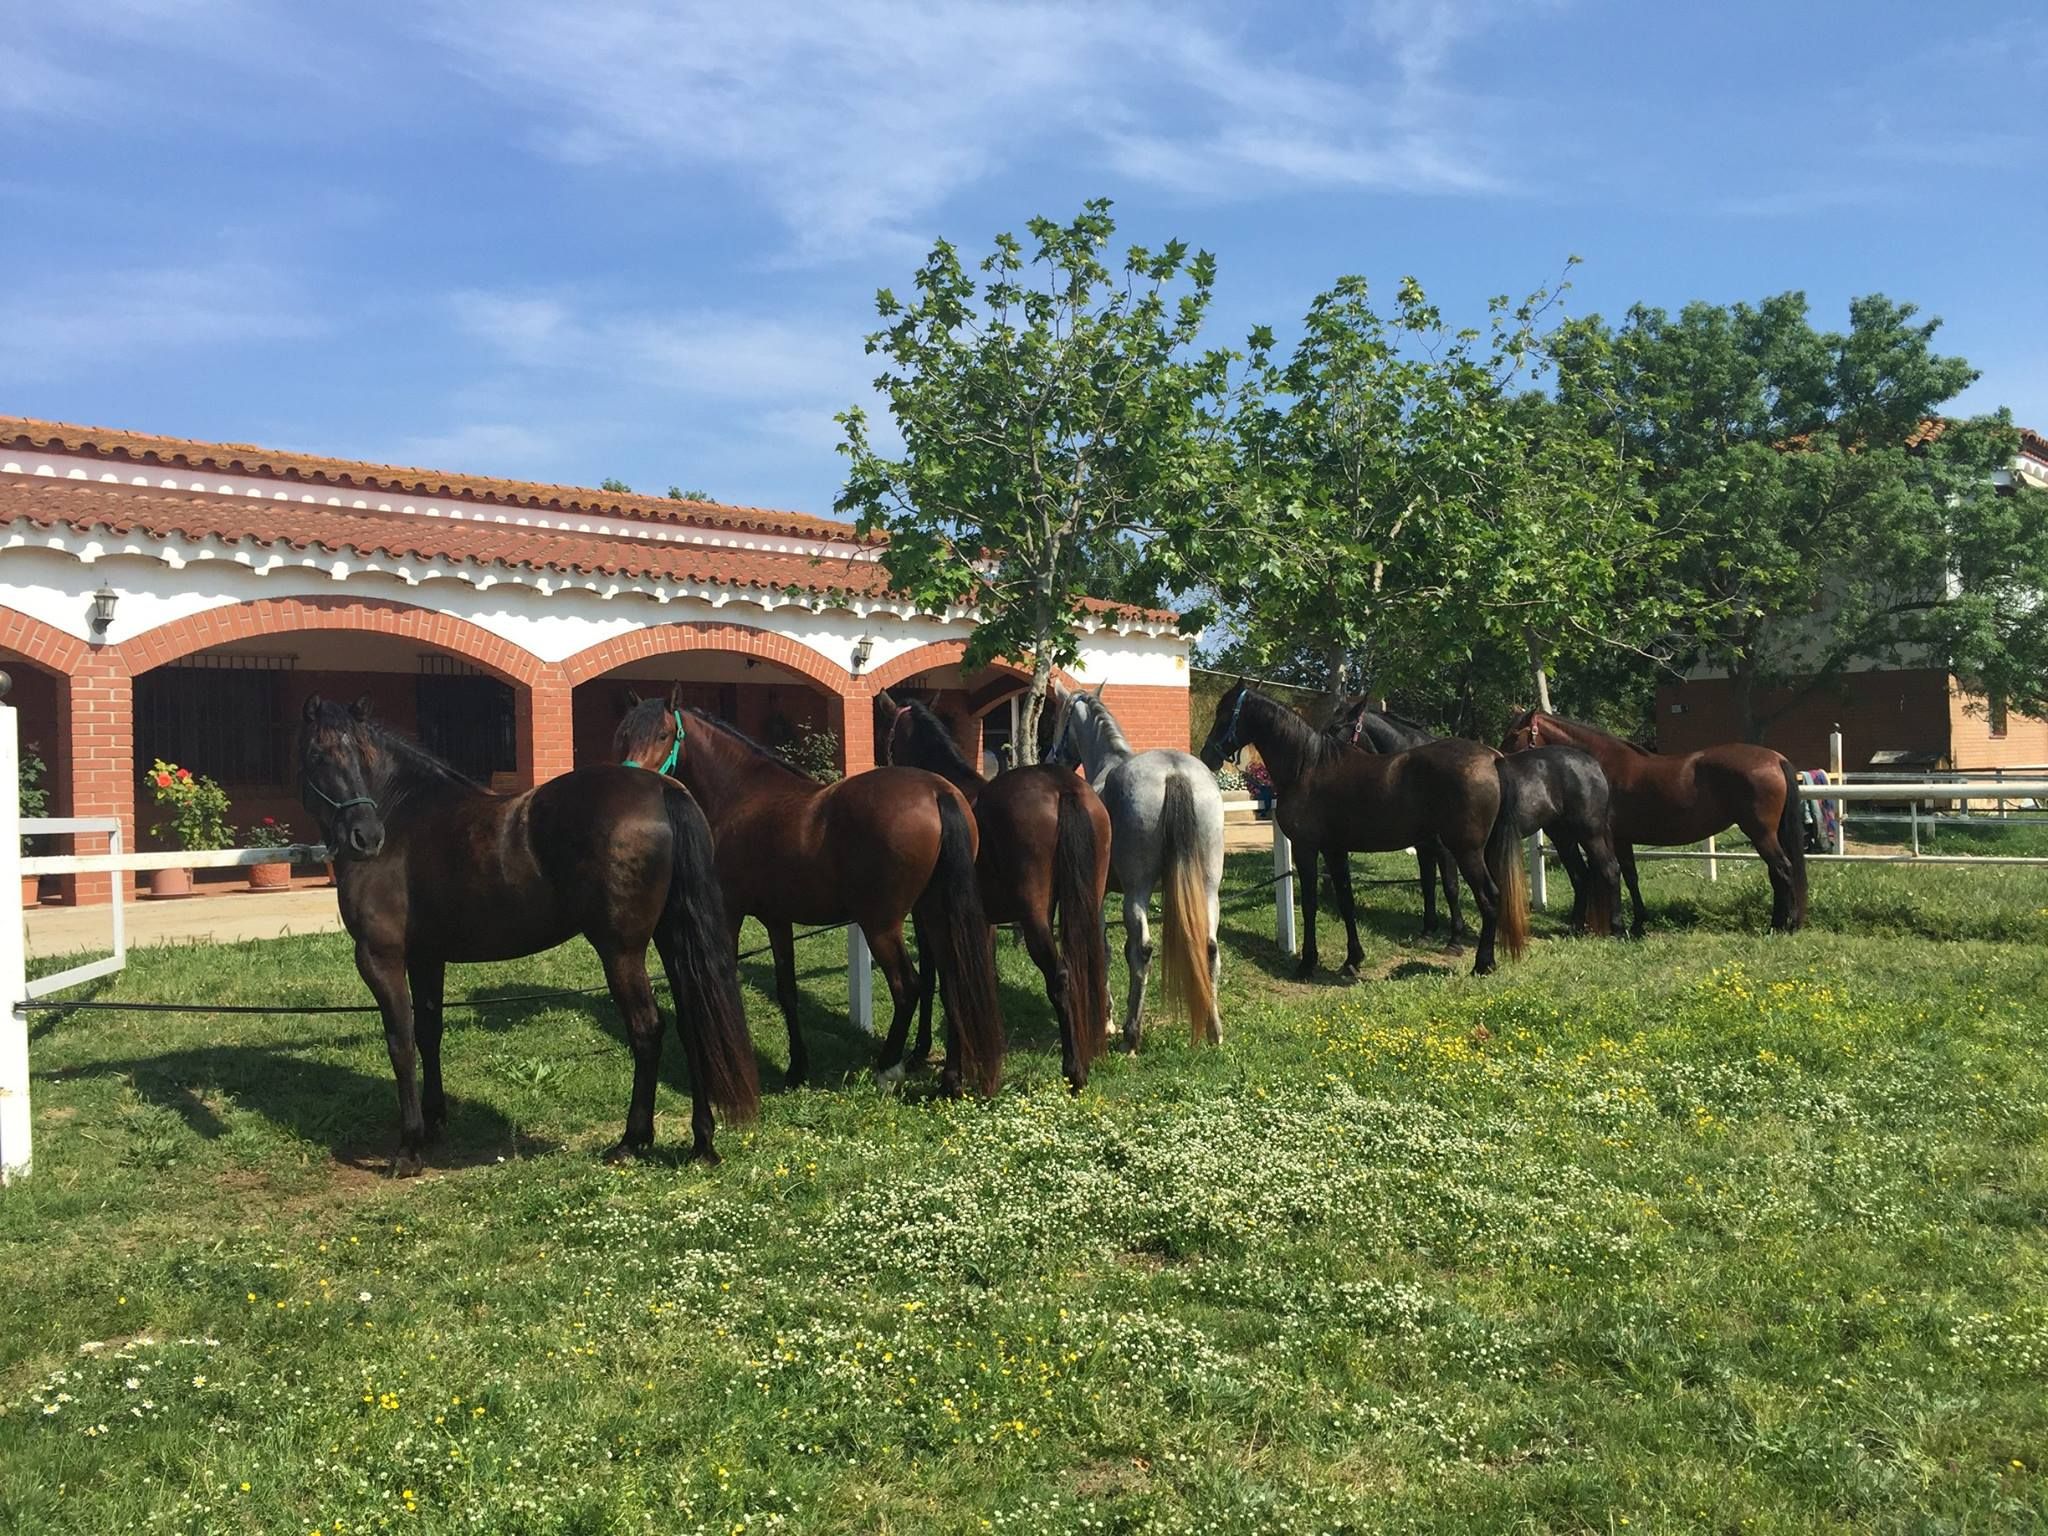 Clases de equitación en Girona